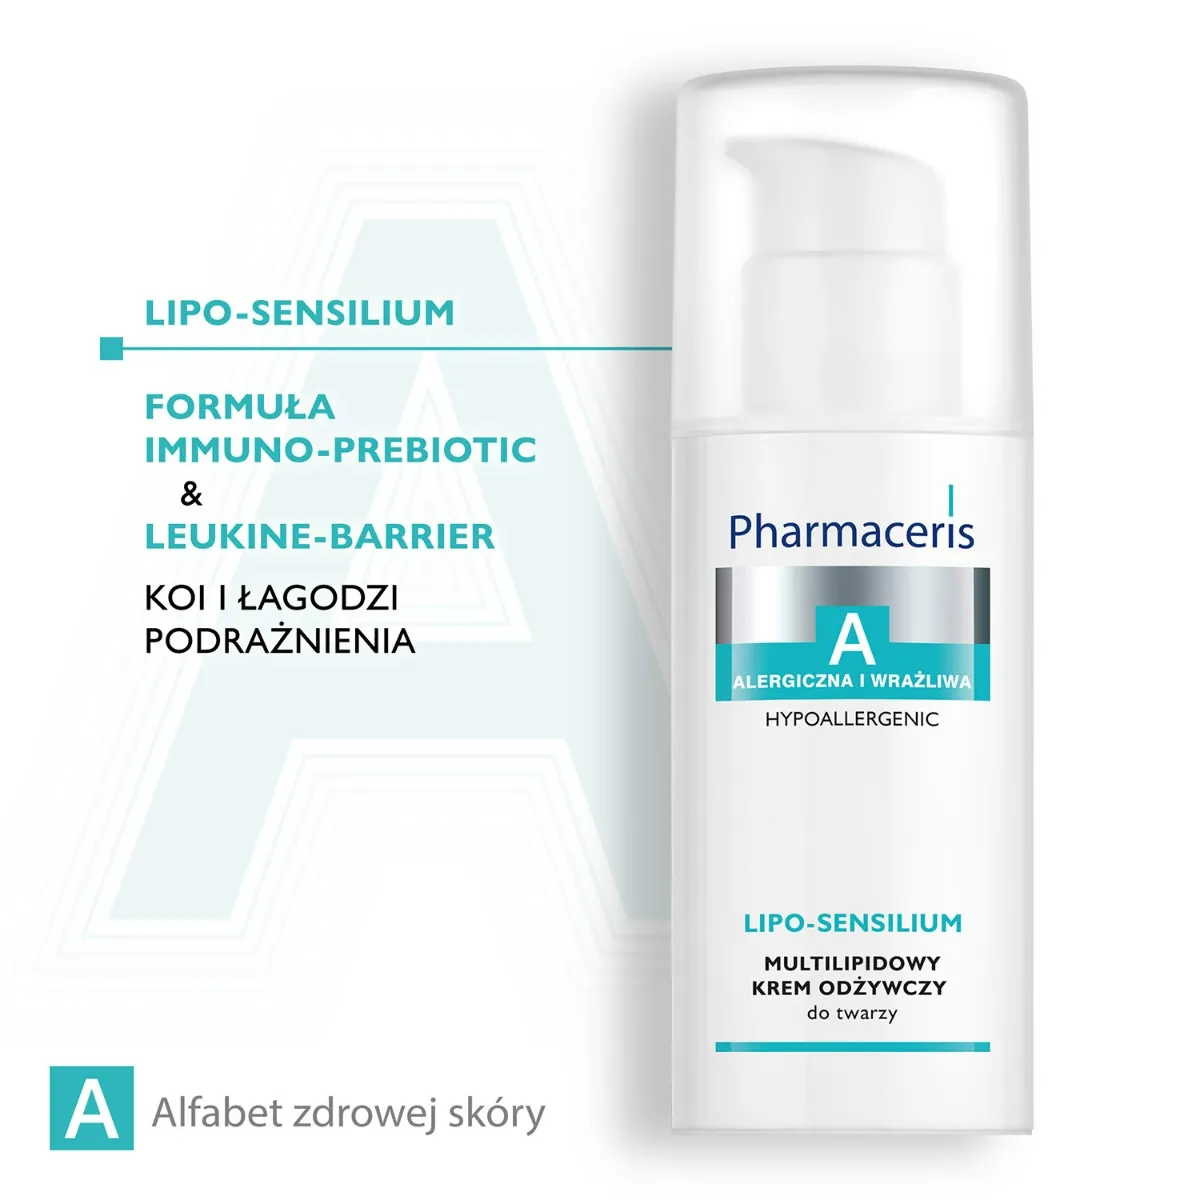 Pharmaceris A Lipo-Sensilium, multilipidowy krem odżywczy do twarzy, skóra alergiczna i wrażliwa, 50 ml 